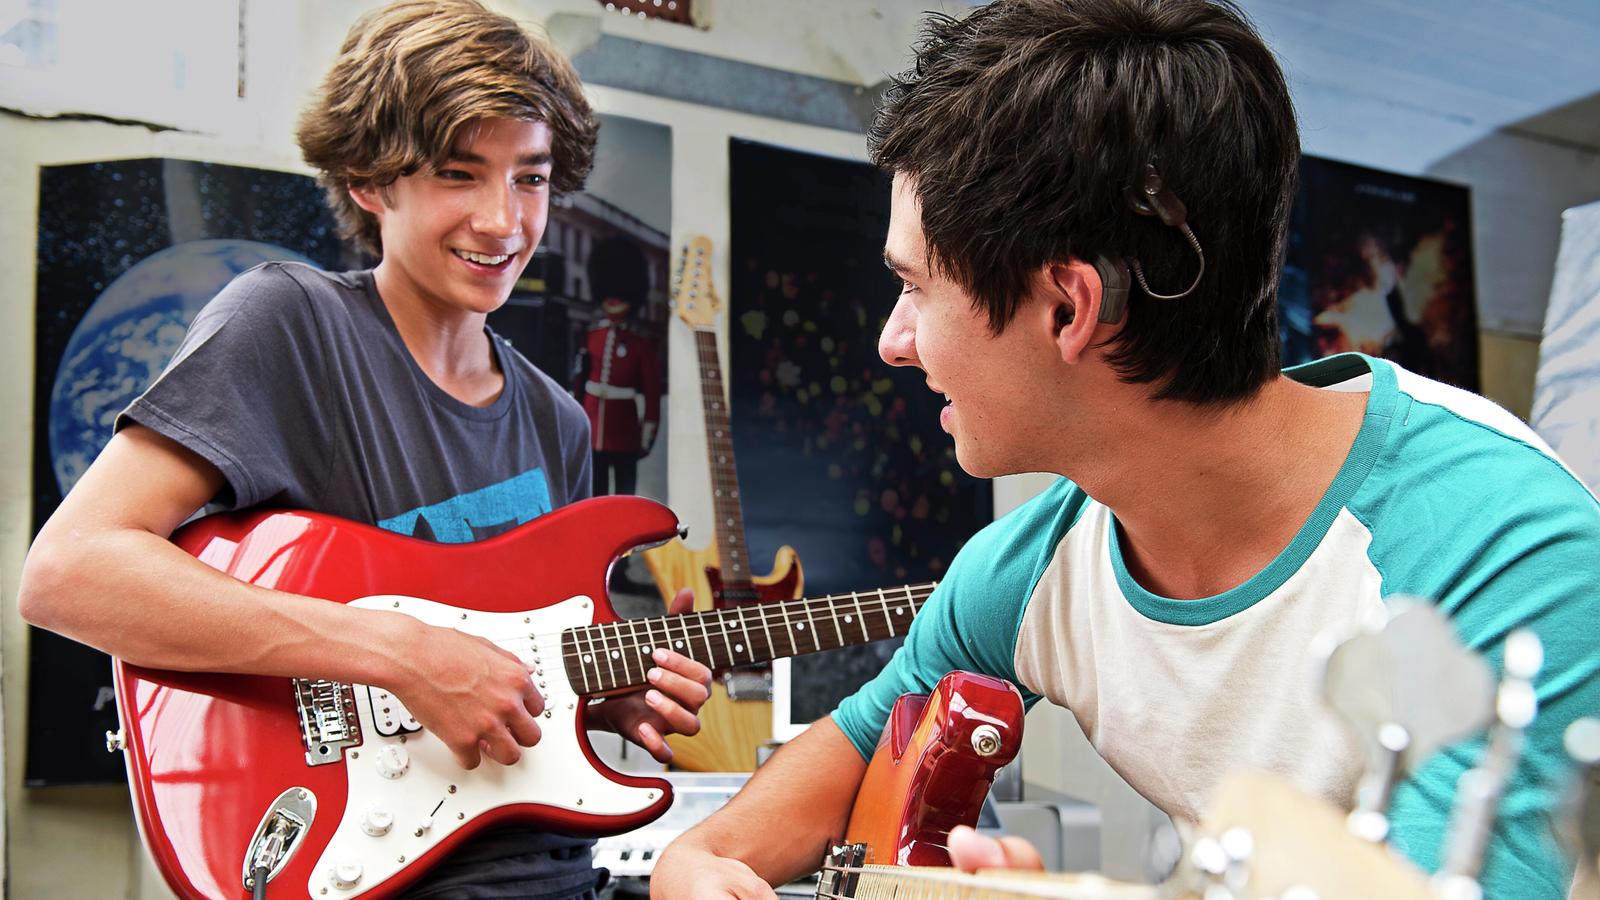 Christopher, uživatel produktu společnosti Cochlear, hraje s kamarádem na kytaru